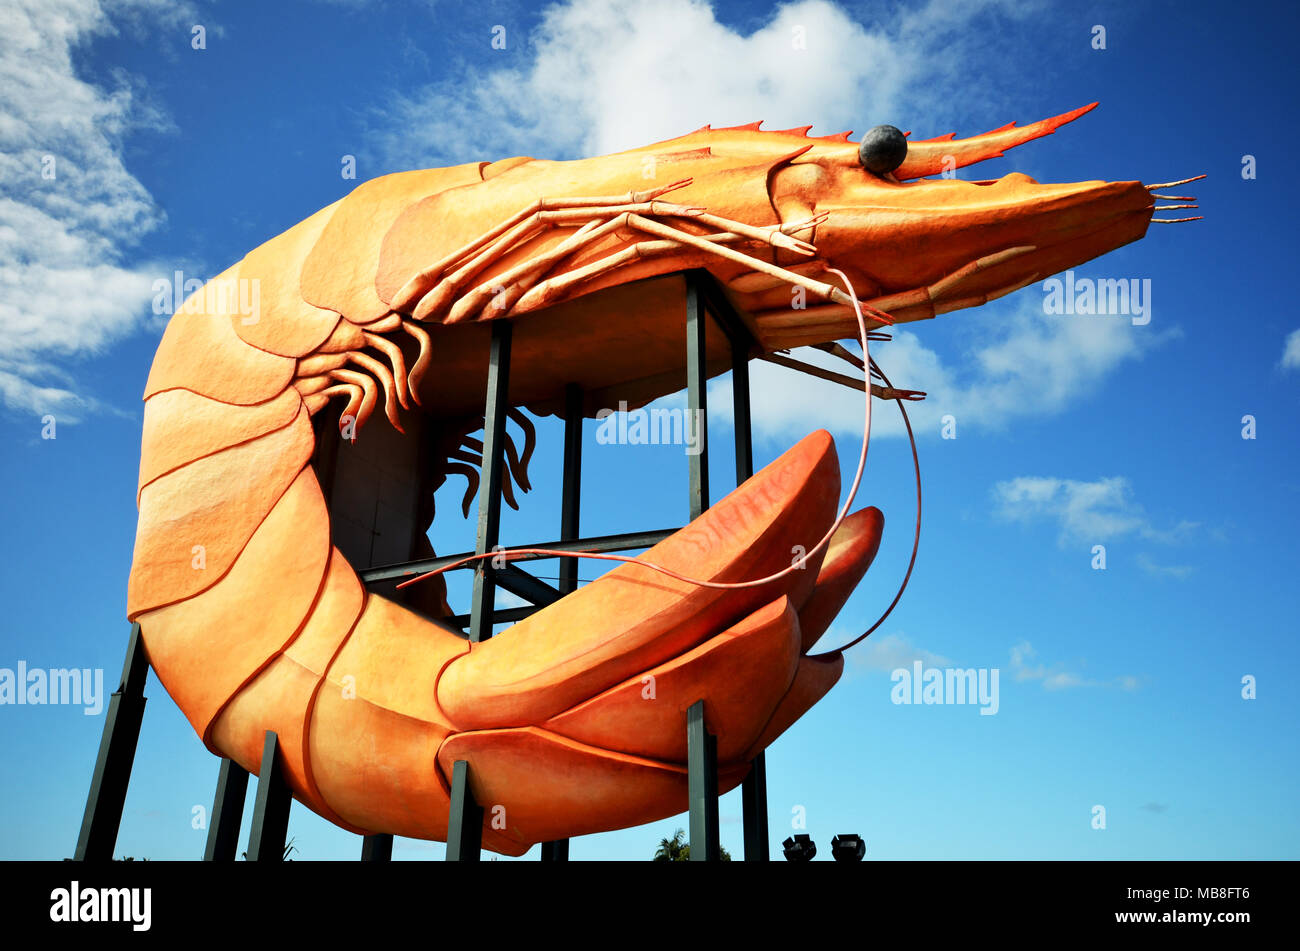 The big prawn at Ballina NSW Australia Stock Photo